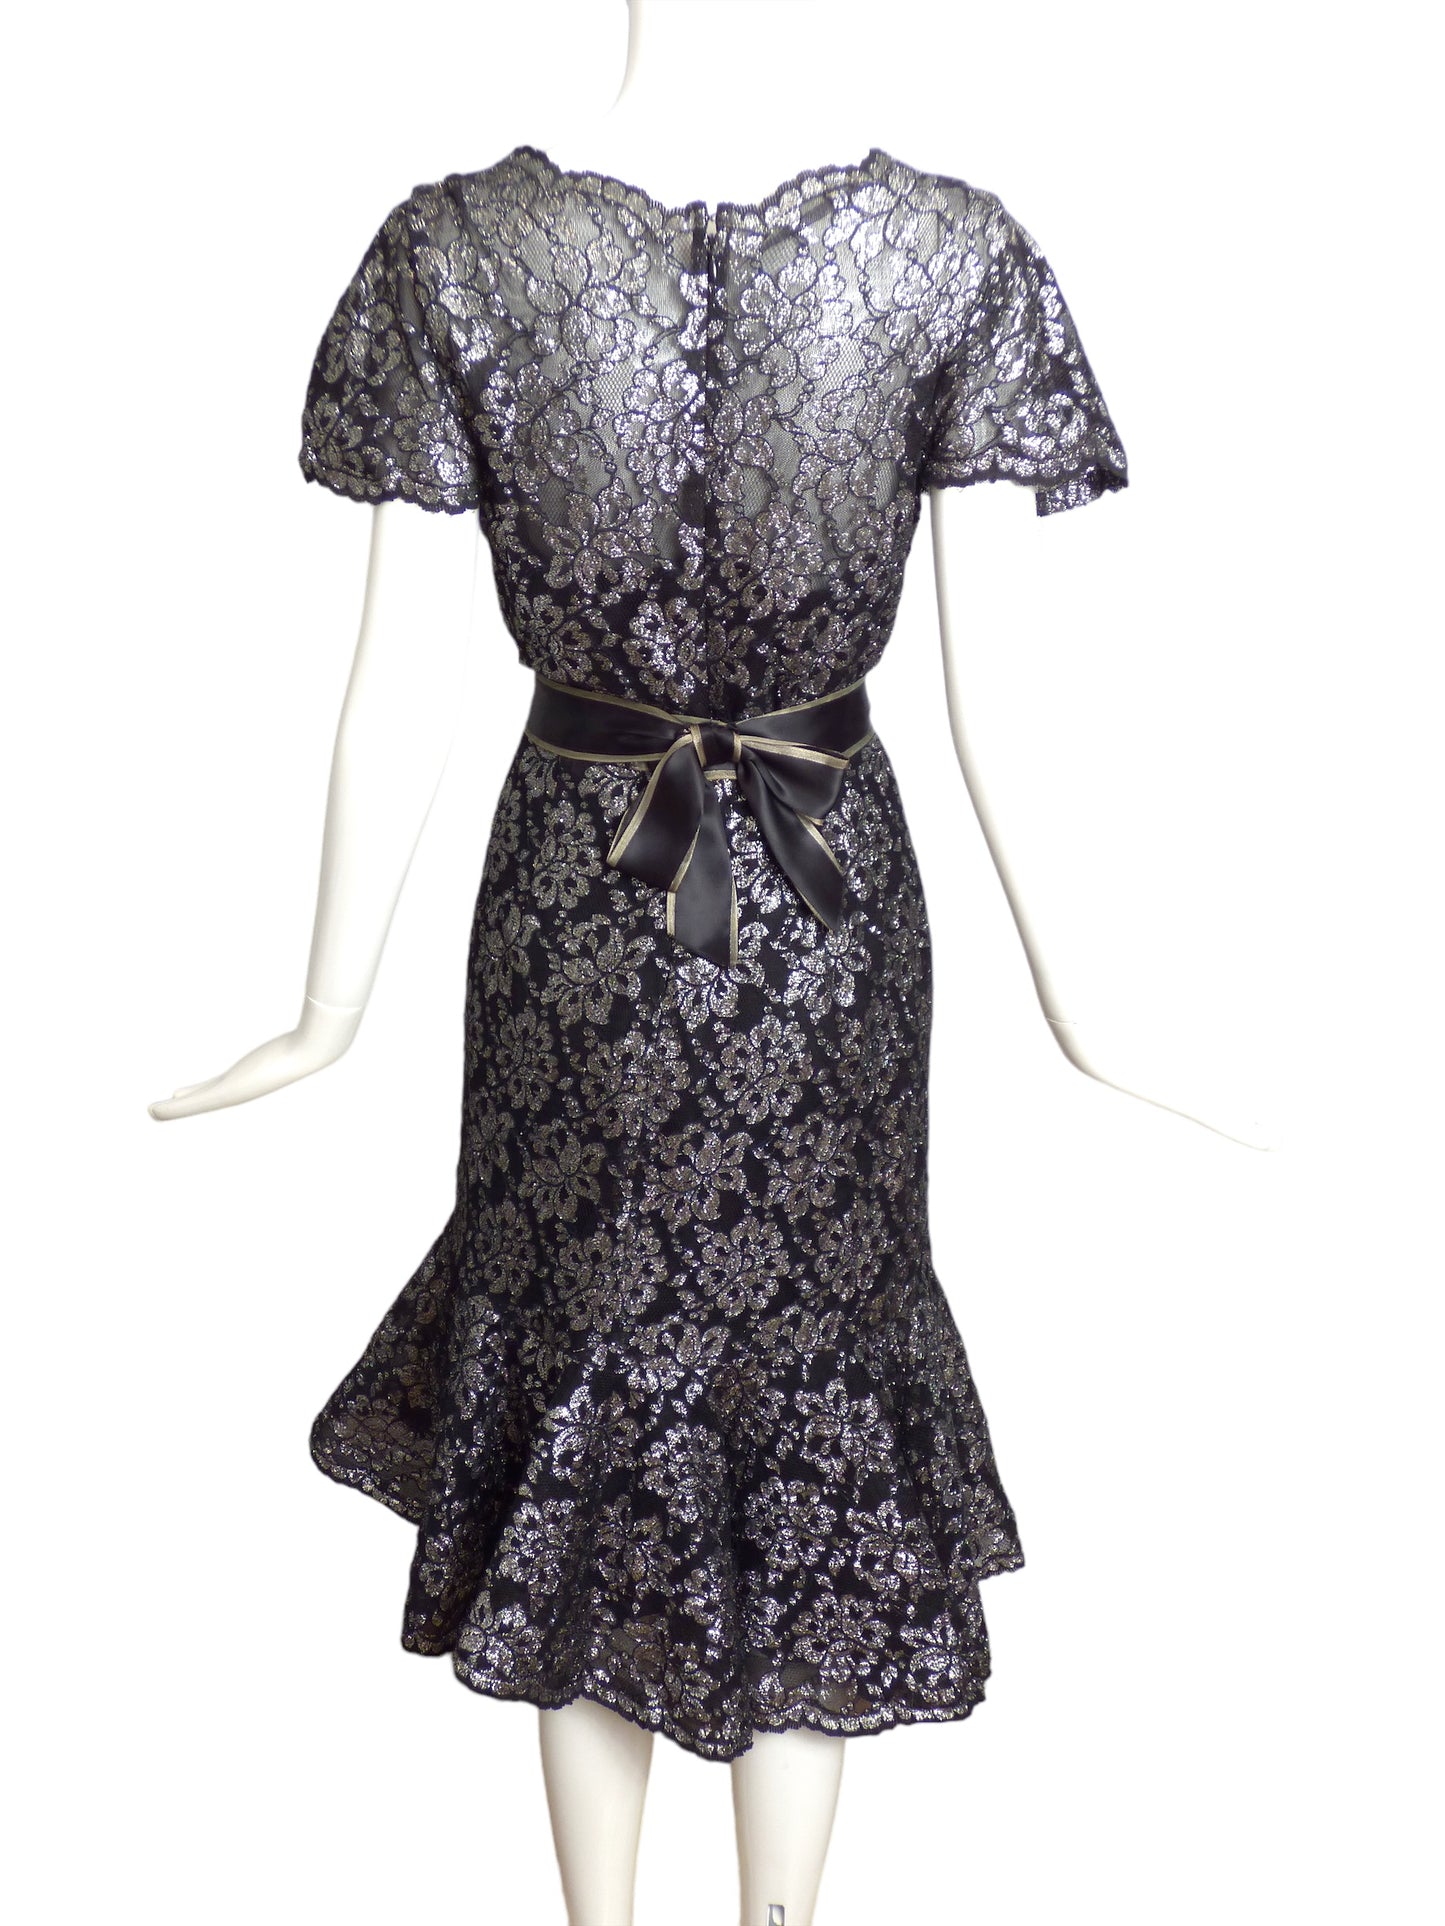 SCAASI- 1980s Metallic Lace Dress, Size 6